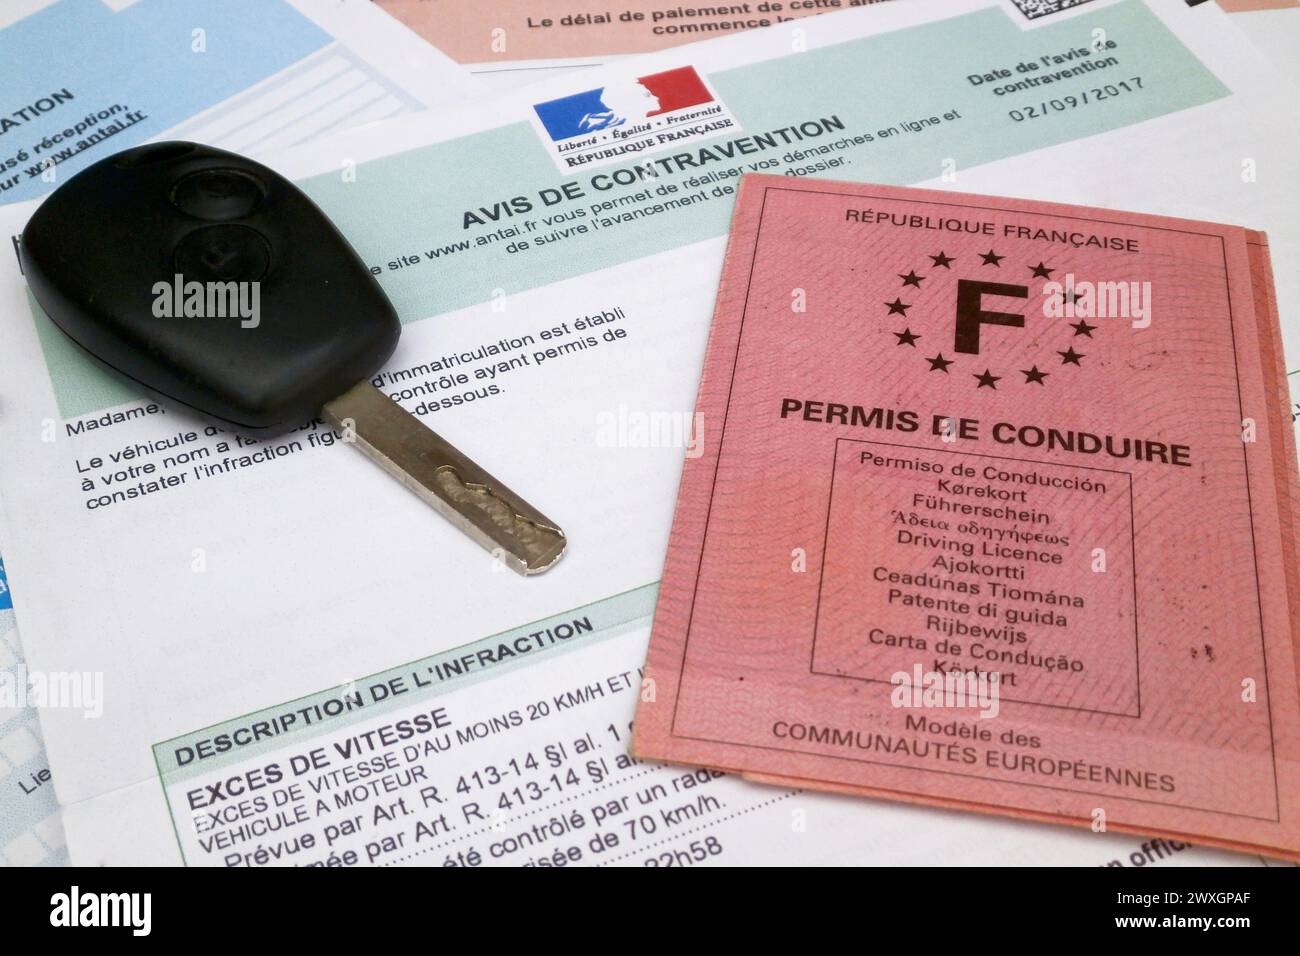 La patente di guida francese e una chiave di auto in cima a un biglietto francese per l'eccesso di velocità con i dettagli dell'infrazione e la data. Tutte le identificazioni lo hanno fatto Foto Stock